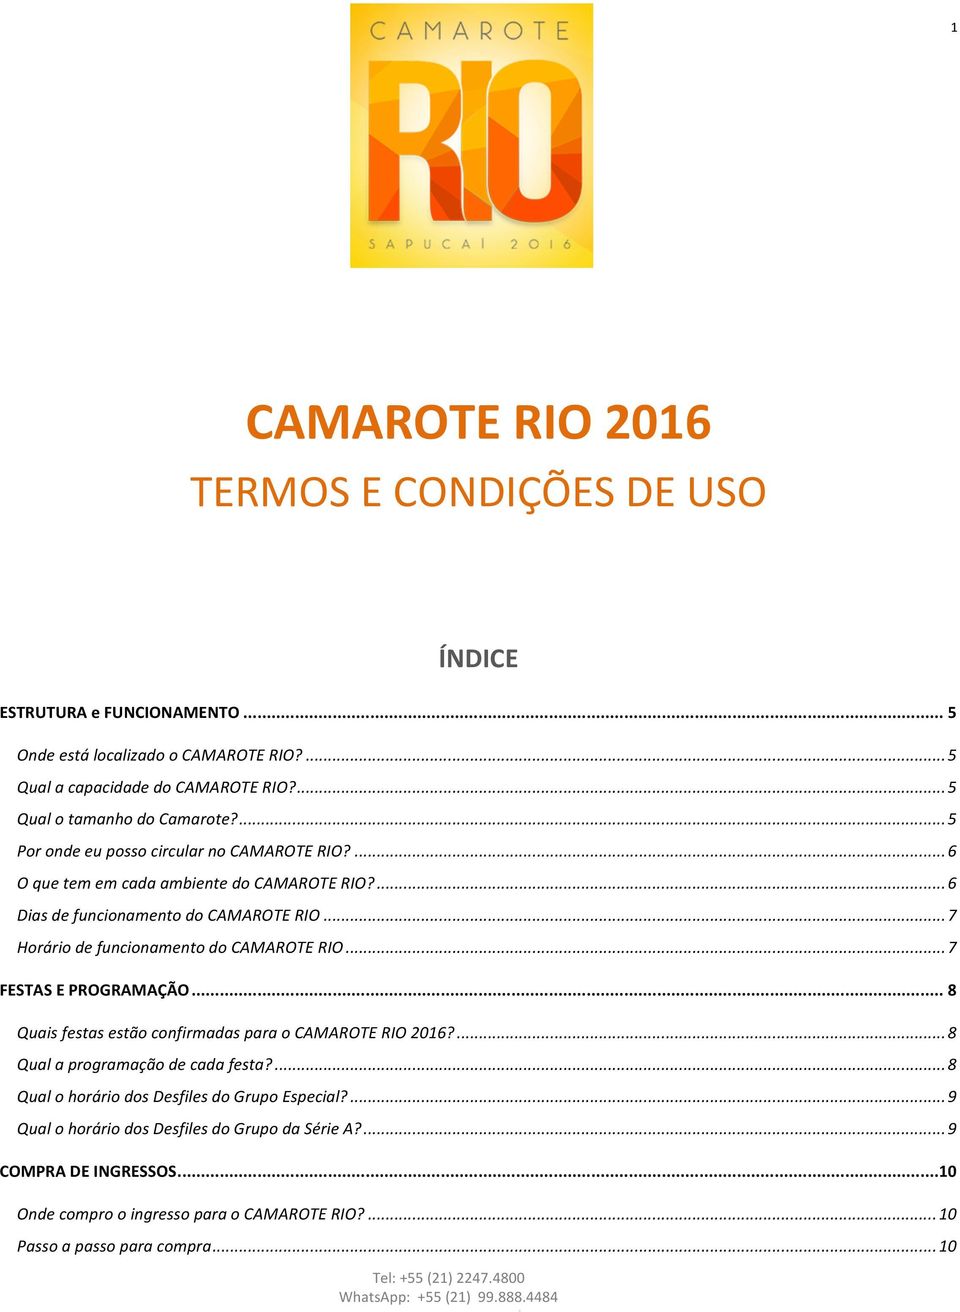 .. 7 Horário de funcionamento do CAMAROTE RIO... 7 FESTAS E PROGRAMAÇÃO... 8 Quais festas estão confirmadas para o CAMAROTE RIO 2016?... 8 Qual a programação de cada festa?